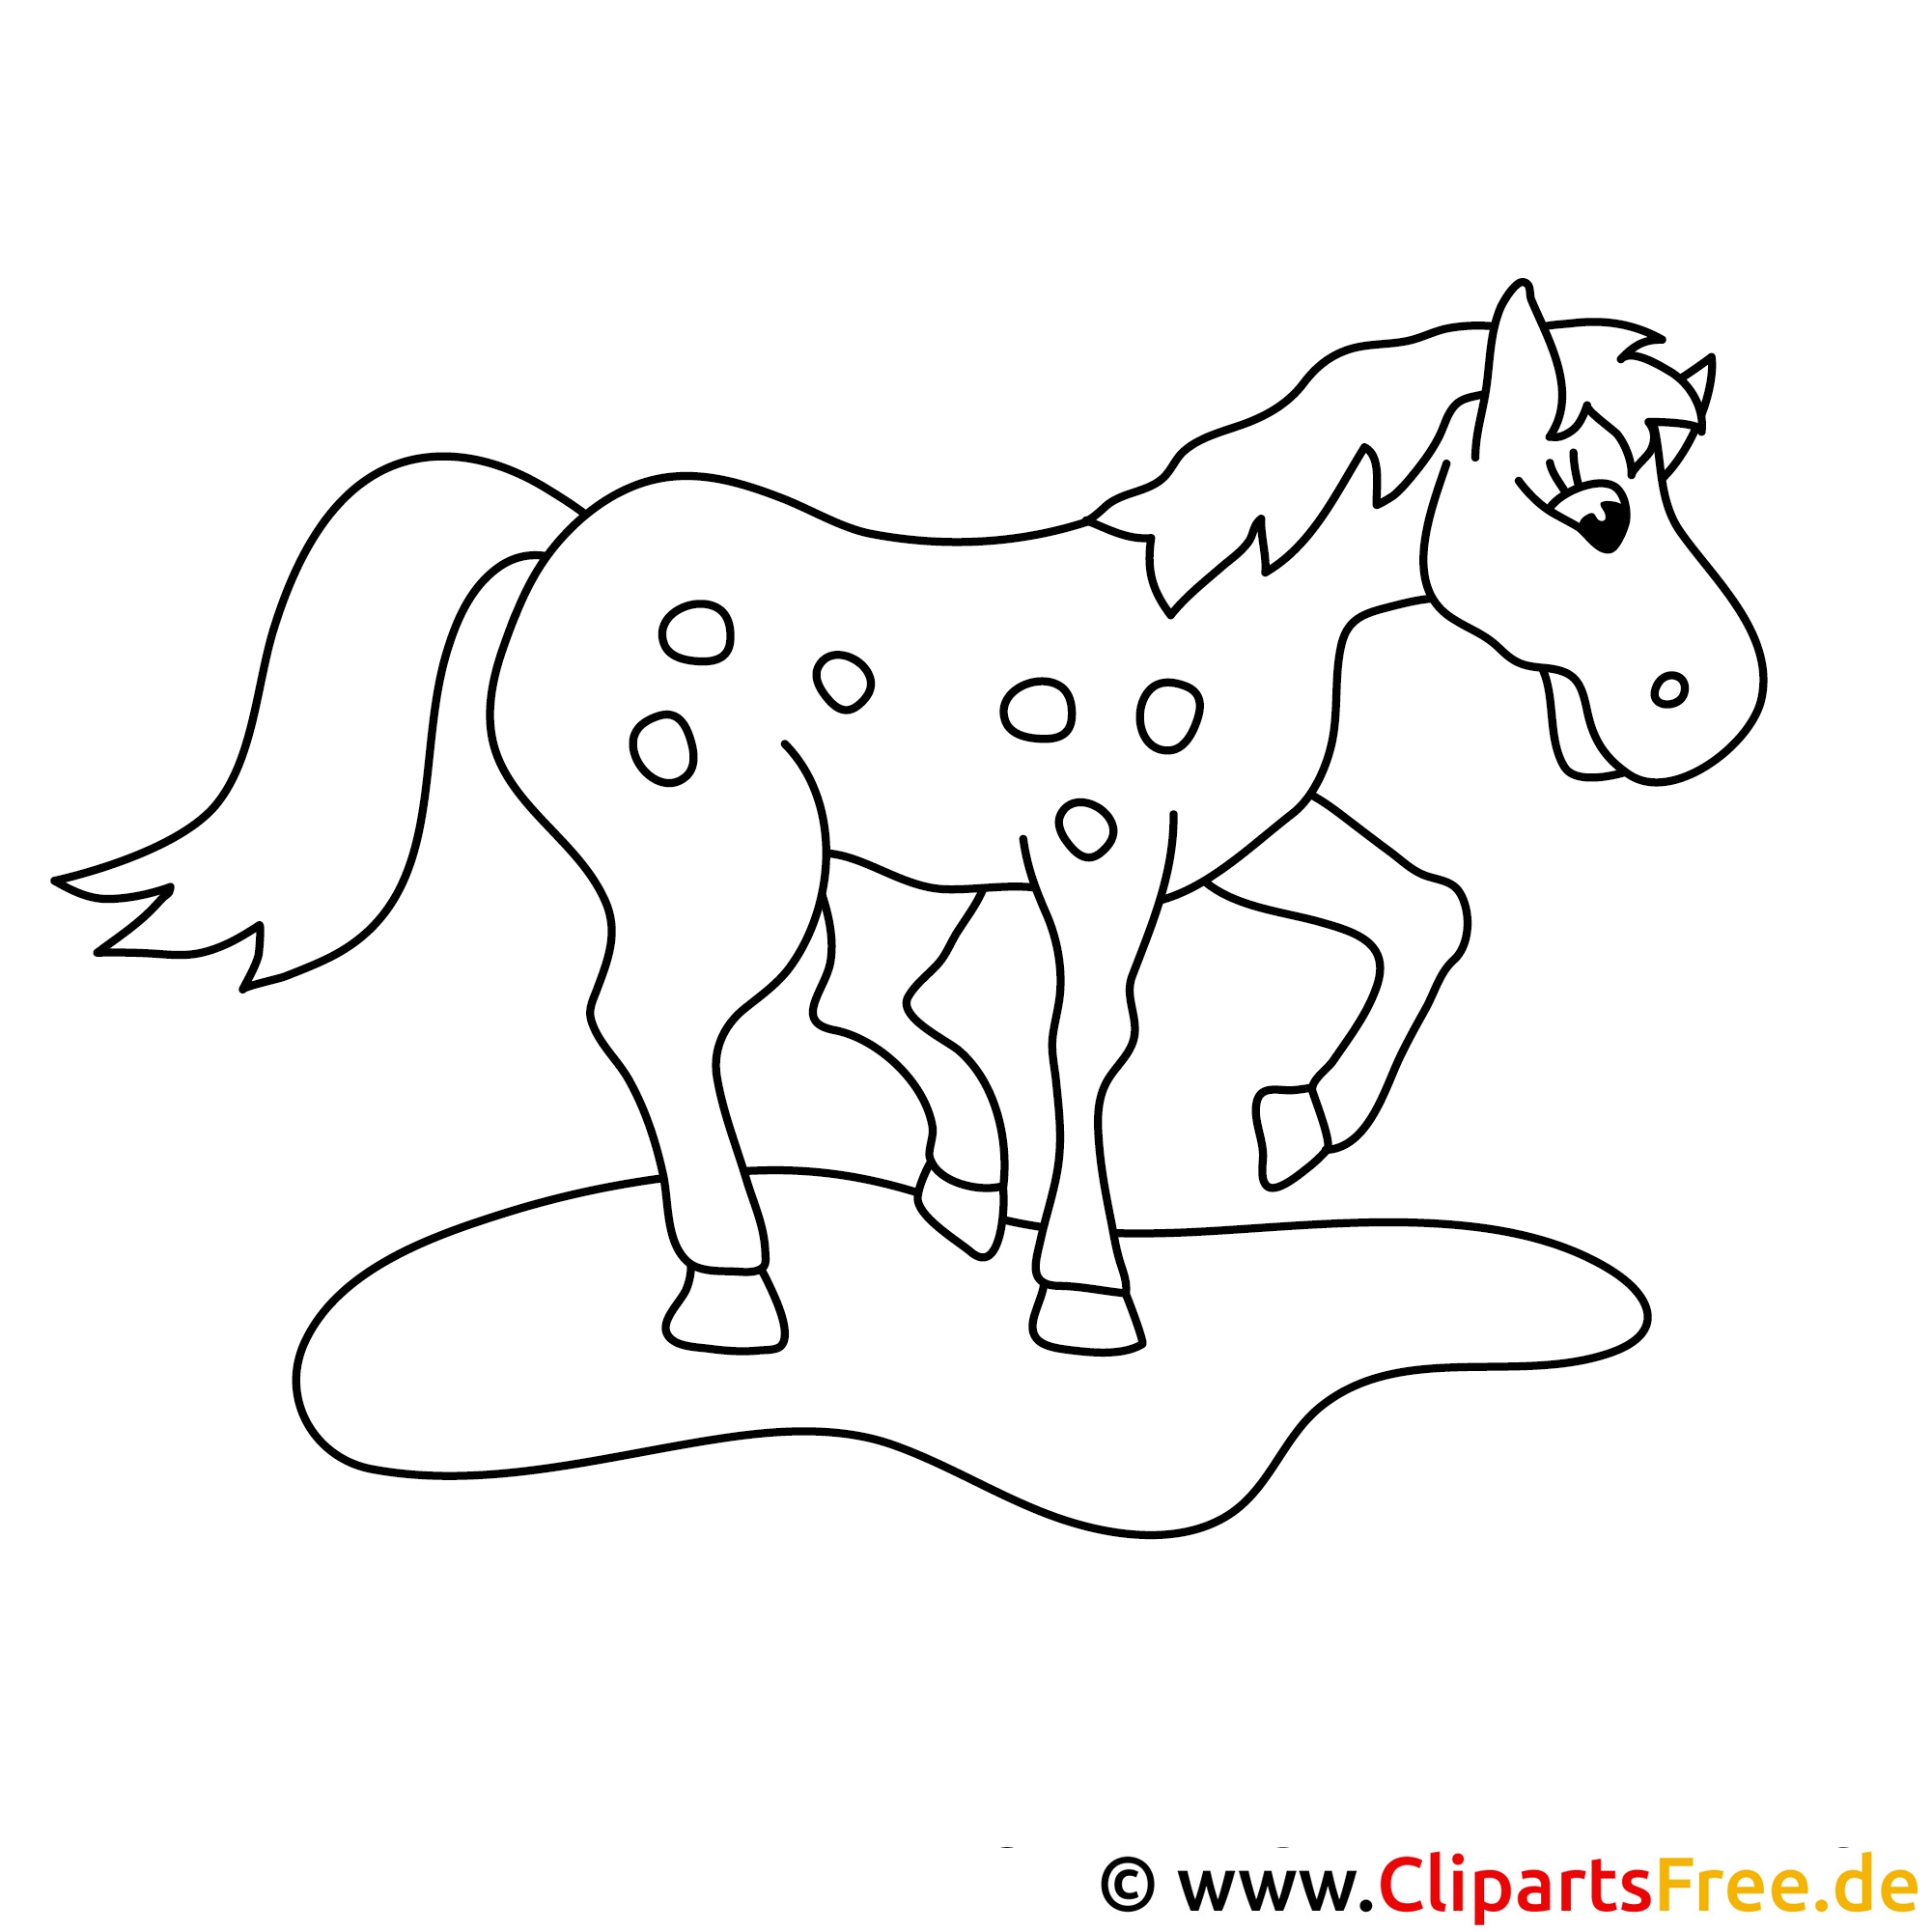 Лошадка для 6 лет. Раскраска лошадка для малышей 2-3 лет. Раскраска лошадка для детей 3-4 лет. Лошадка рисунок для детей карандашом. Раскраска лошадка для детей 5-6 лет.